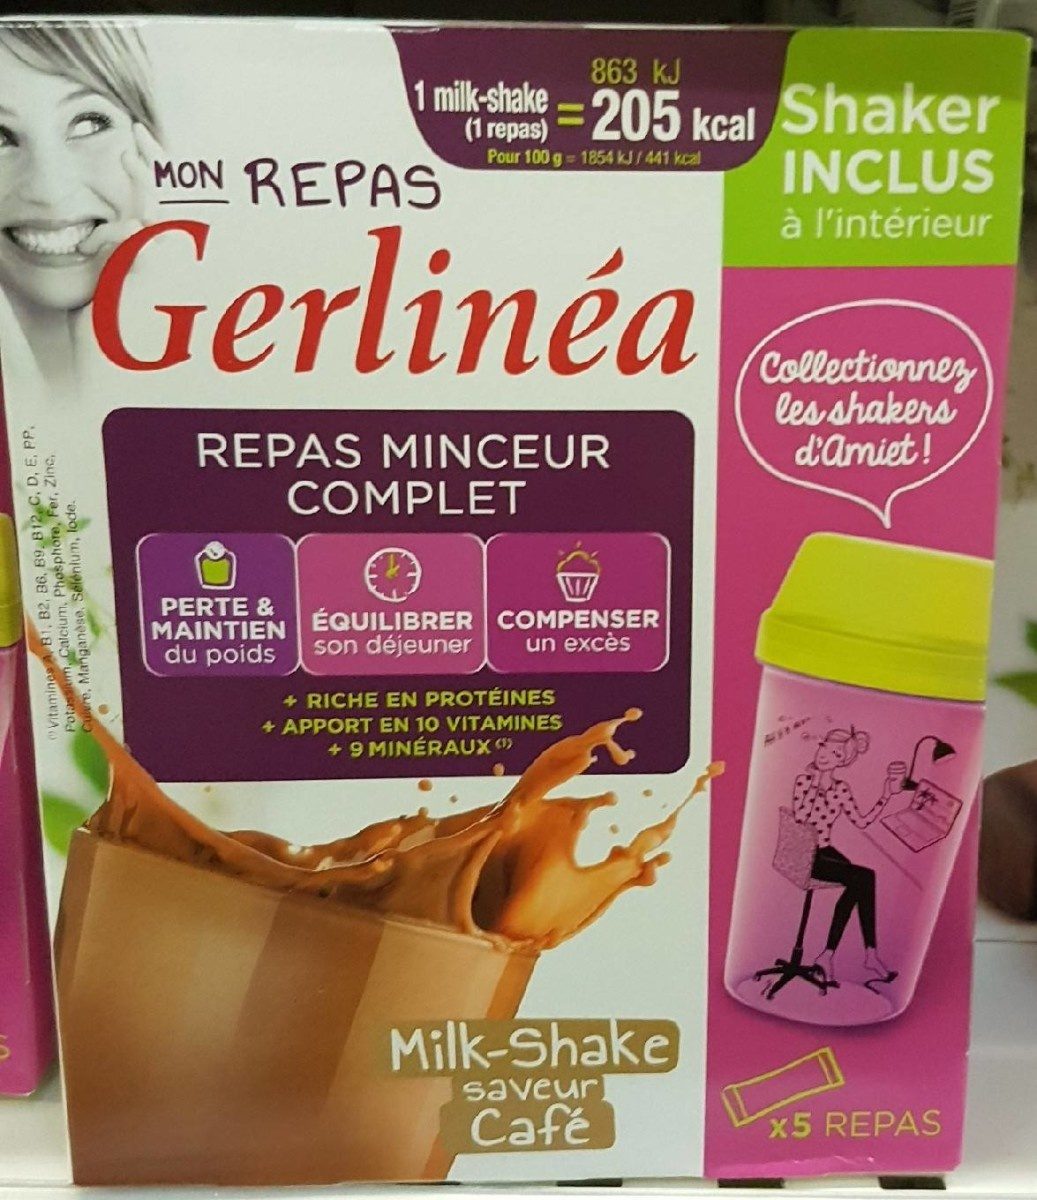 Mon Repas Gerlinéa Milk-shake Café - Producto - fr